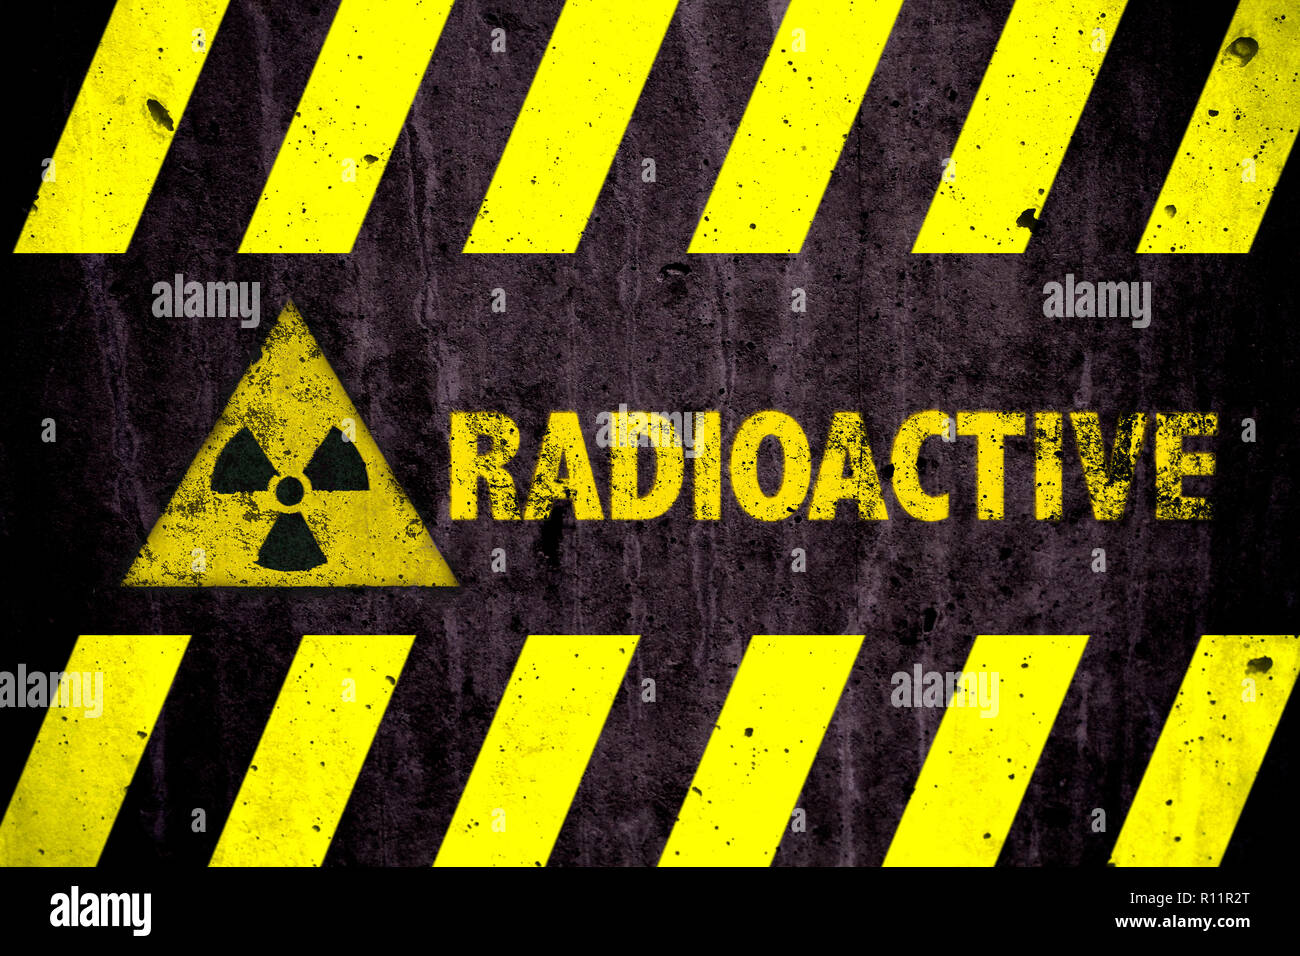 Radioattivo Radiazioni Ionizzanti O Energia Nucleare Pericolo Simbolo E Parola Di Colore Giallo E Con Luci Di Strisce Nere Dipinta Su Un Massiccio Muro Di Cemento Con Foto Stock Alamy